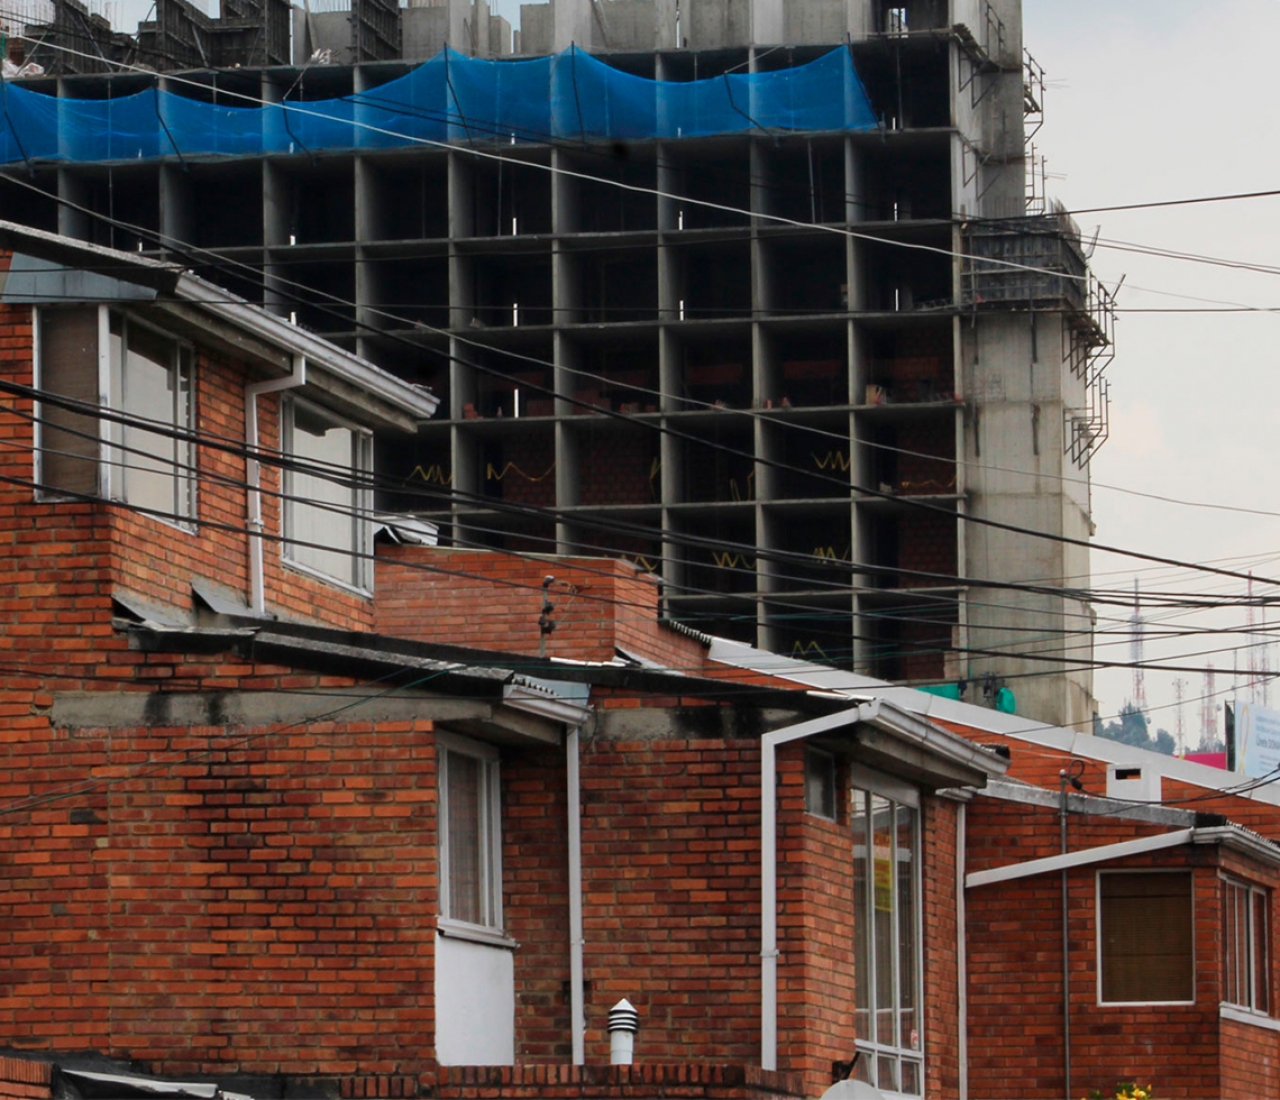 Niza Córdoba, barrio de Bogotá, enfrenta problemas por construcción aledaña